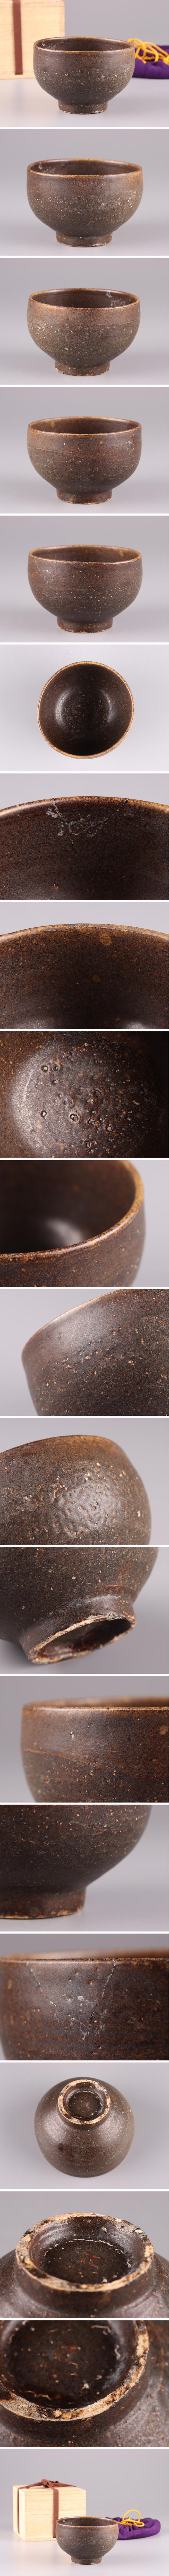 【販売買蔵】古美術 茶道具 朝鮮古陶磁器 高麗 黒高麗 茶碗 古作 時代物 極上品 初だし品 3614 高麗